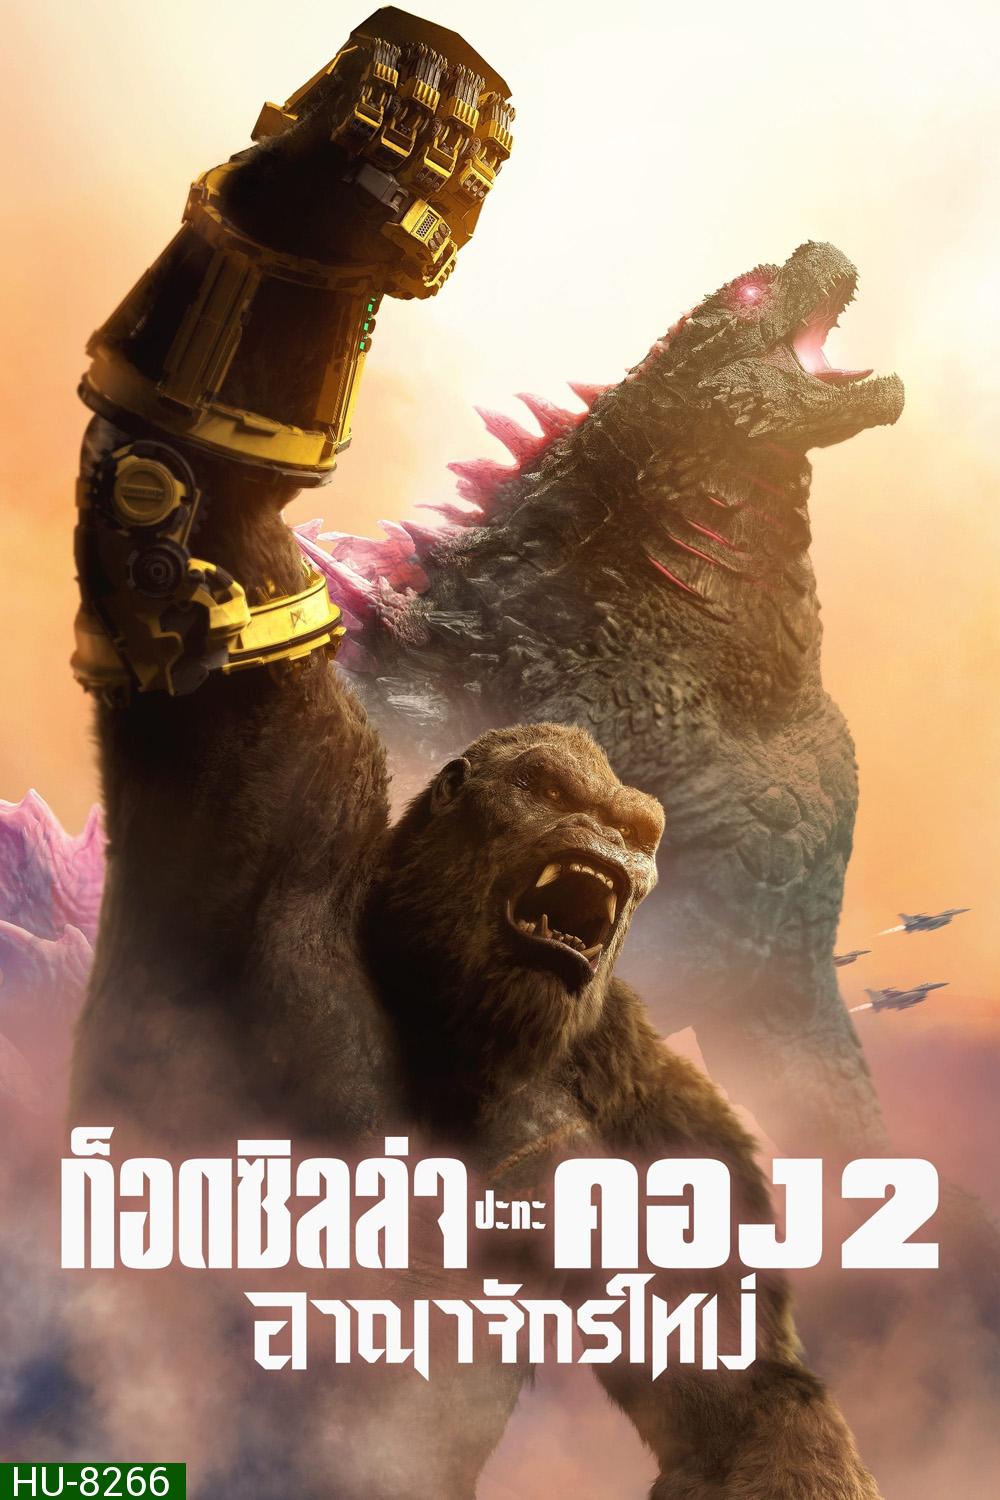 Godzilla x Kong The New Empire ก็อดซิลล่า ปะทะ คอง 2 อาณาจักรใหม่ (2024)